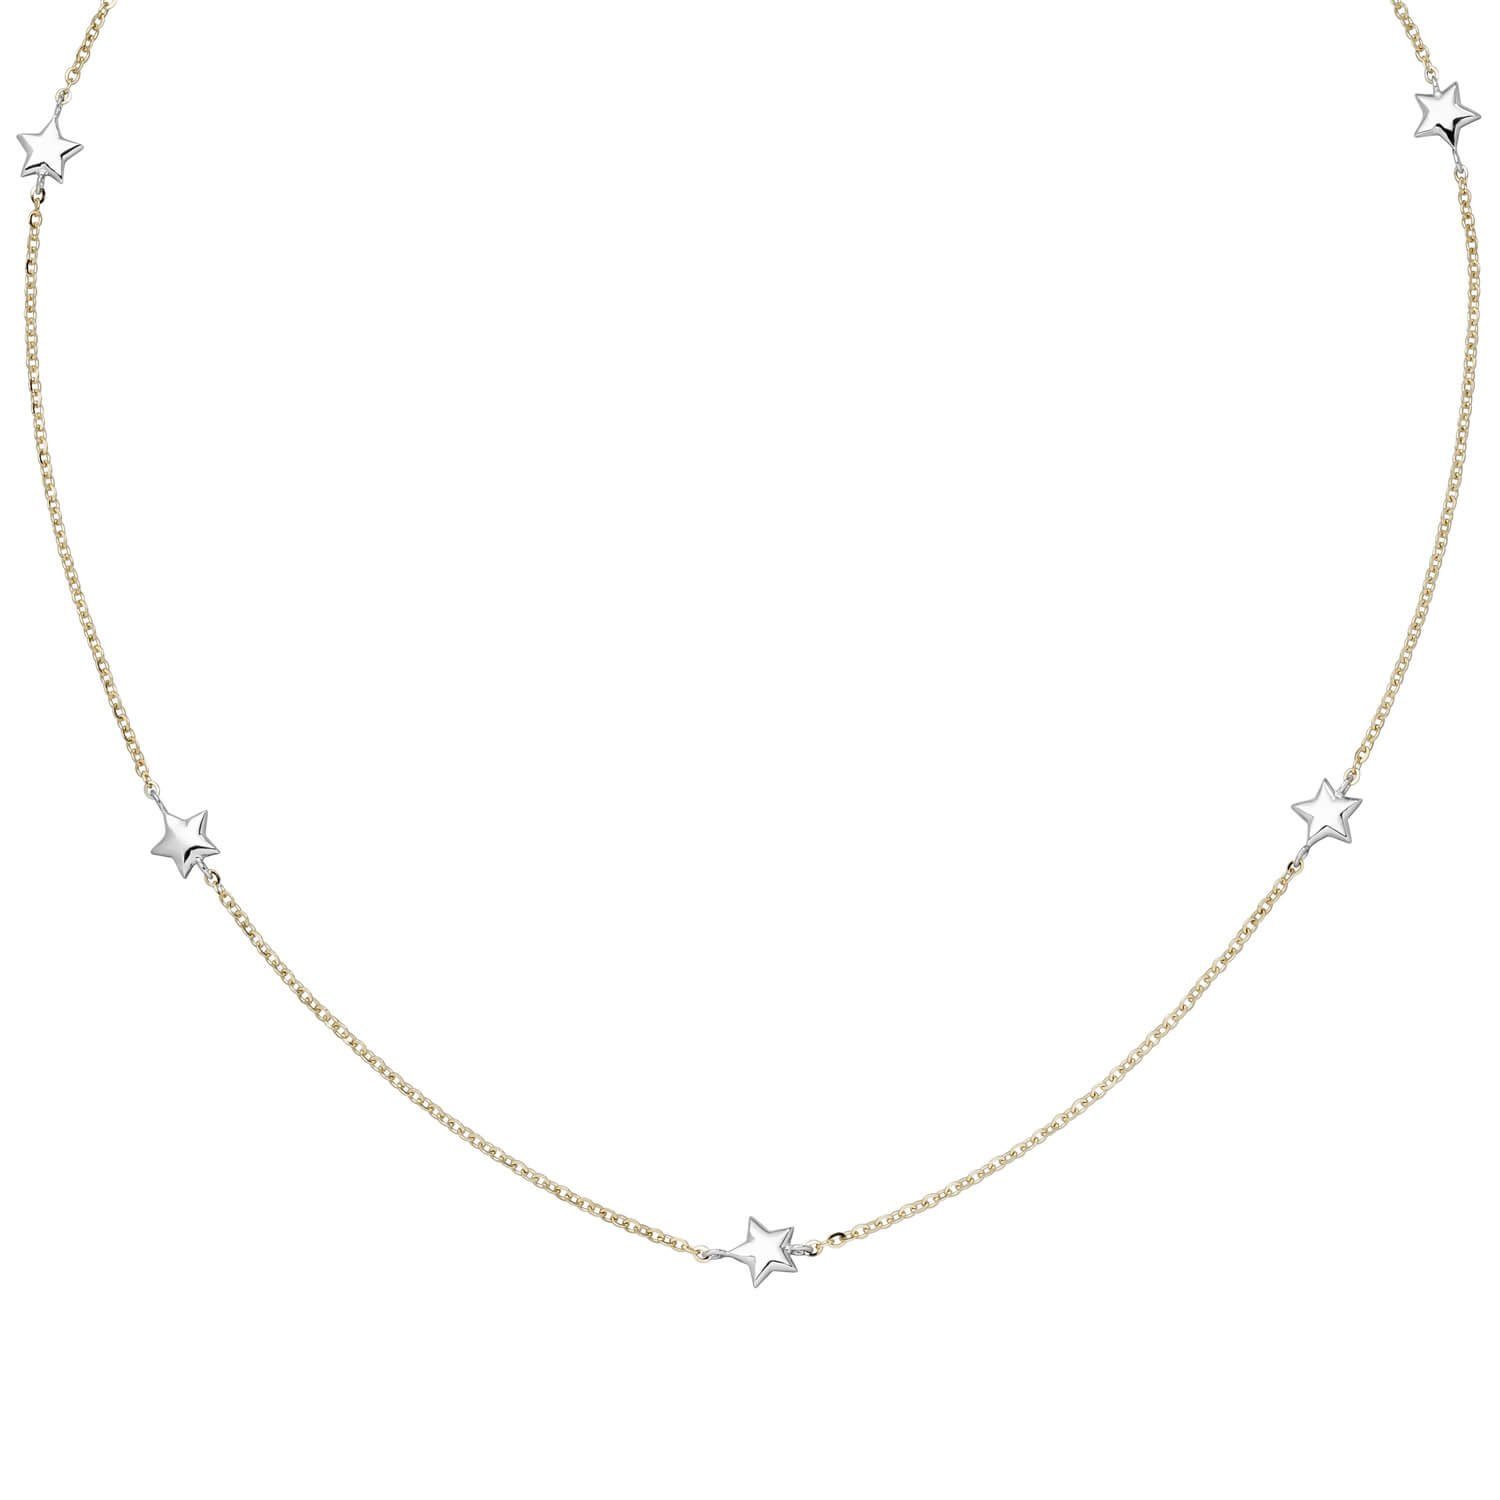 Schmuck Krone Goldkette Halskette Collier Sterne 375 Gelbgold & Weißgold Rundankerkette 38-43cm bicolor | Ketten ohne Anhänger